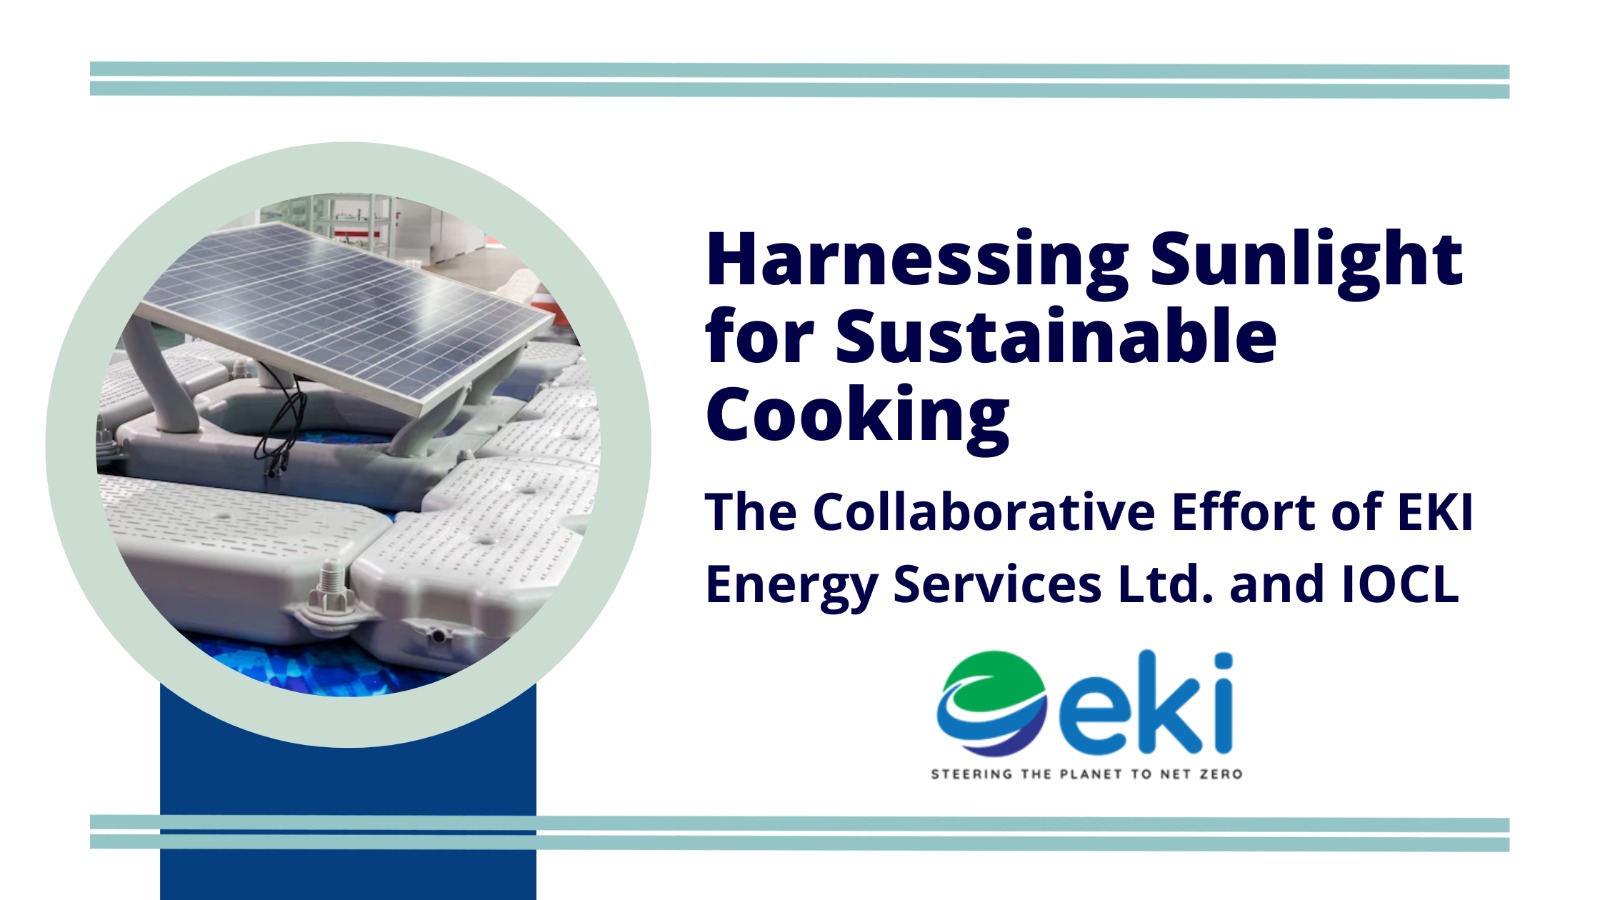 EKI Energy Services Ltd.